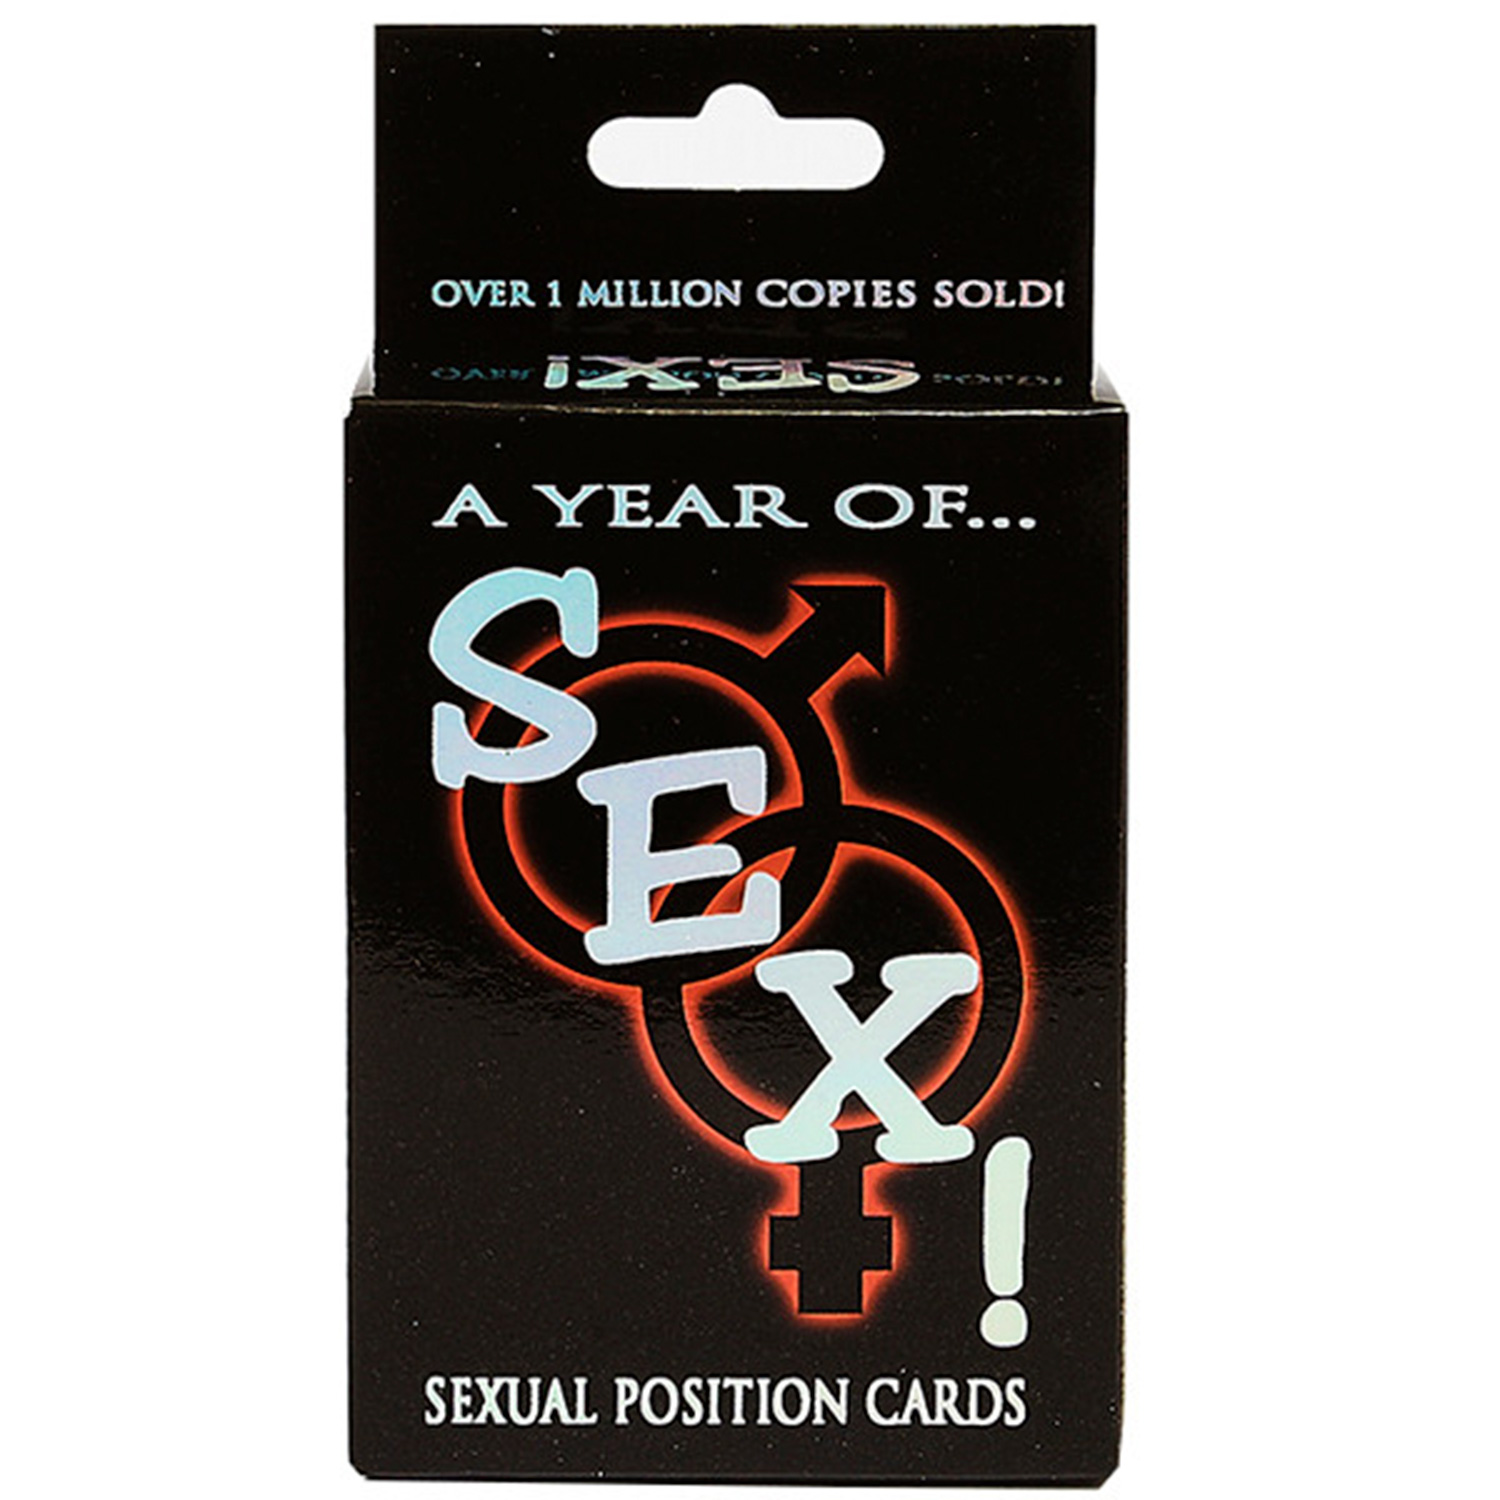 A Year of SEX Spillekort thumbnail